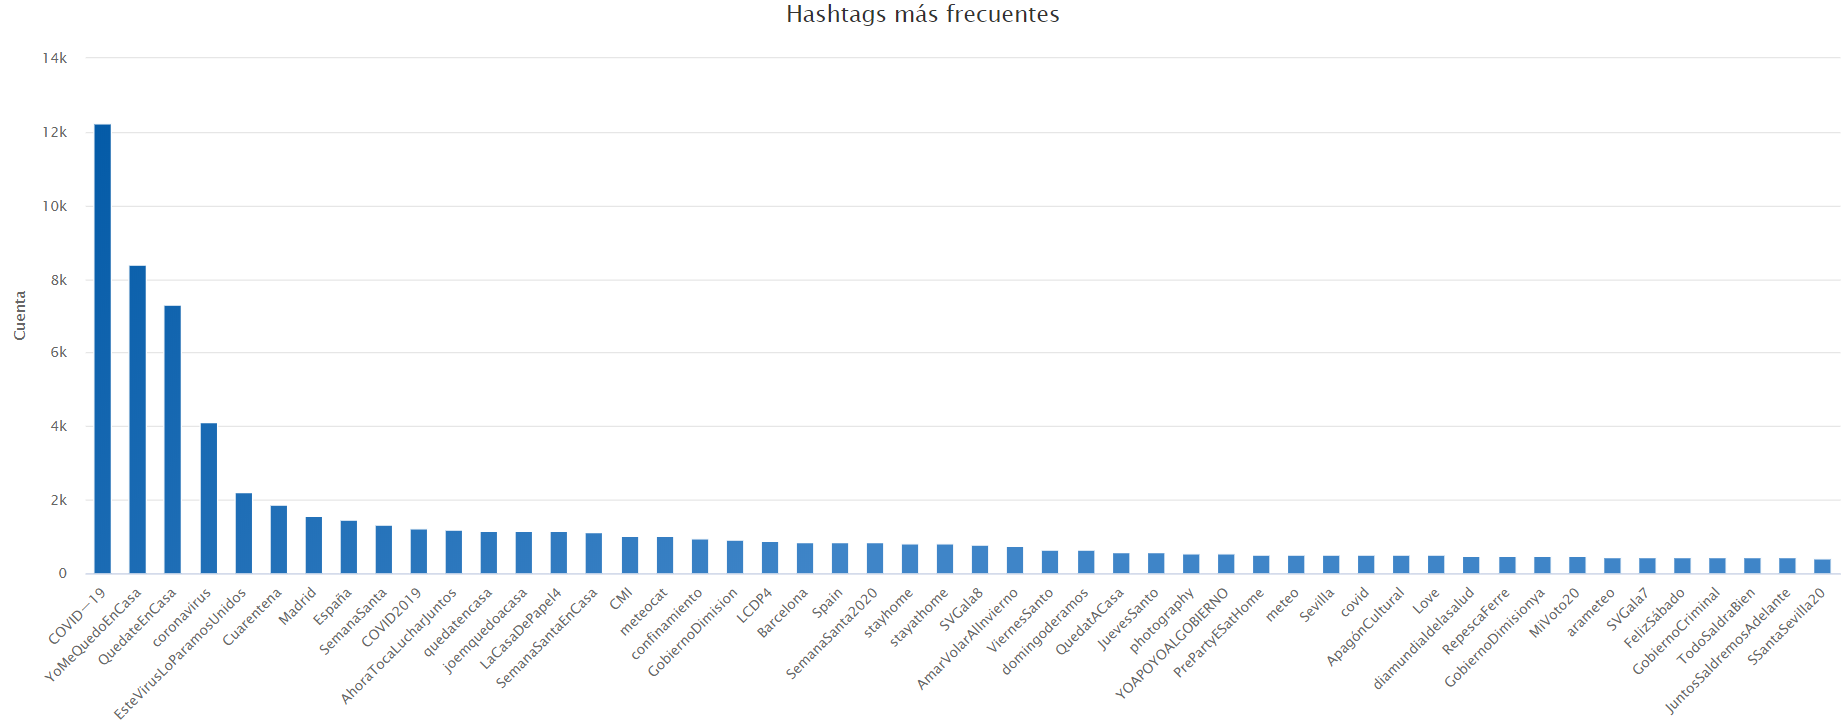 Hashtags más frecuentes a nivel nacional